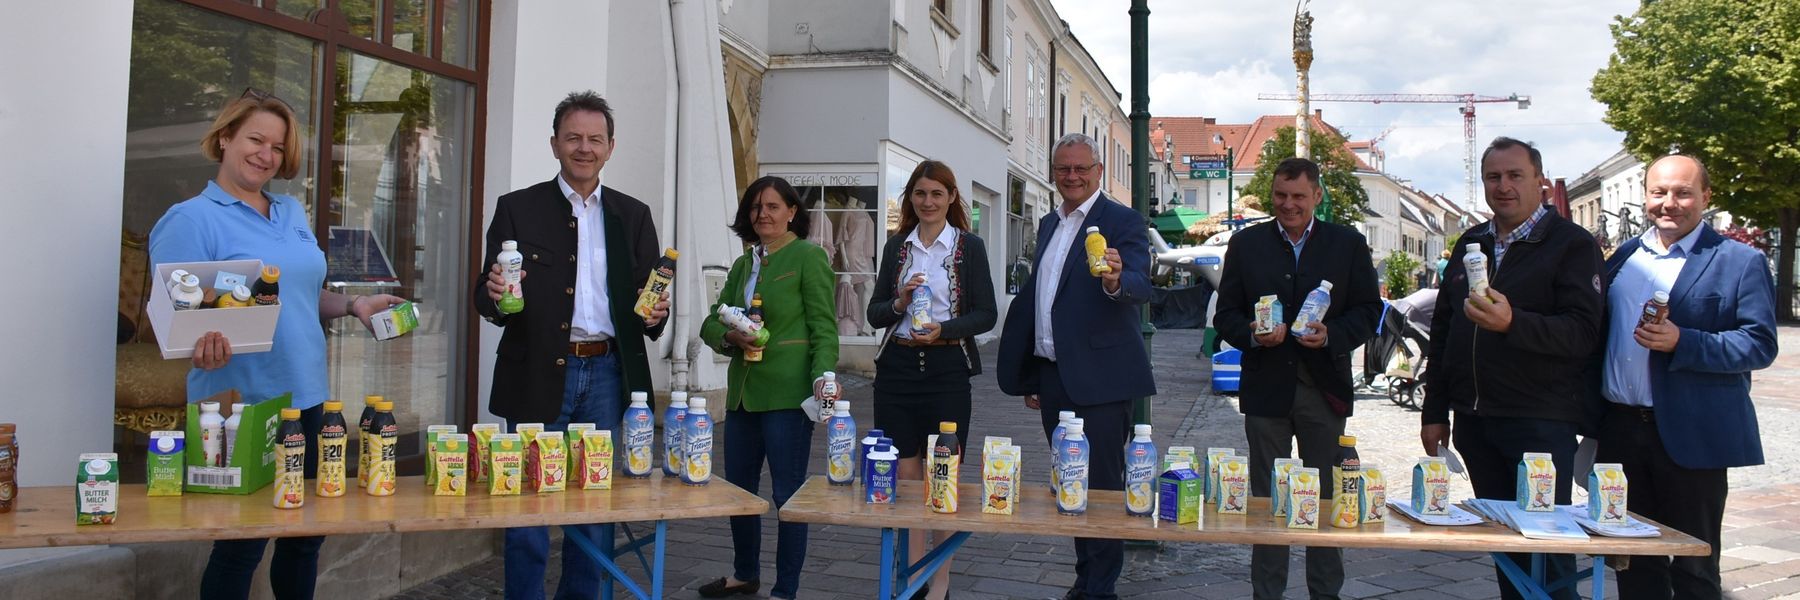 Milchverteilaktion in Eisenstadt Weltmilchtag Milch.jpg